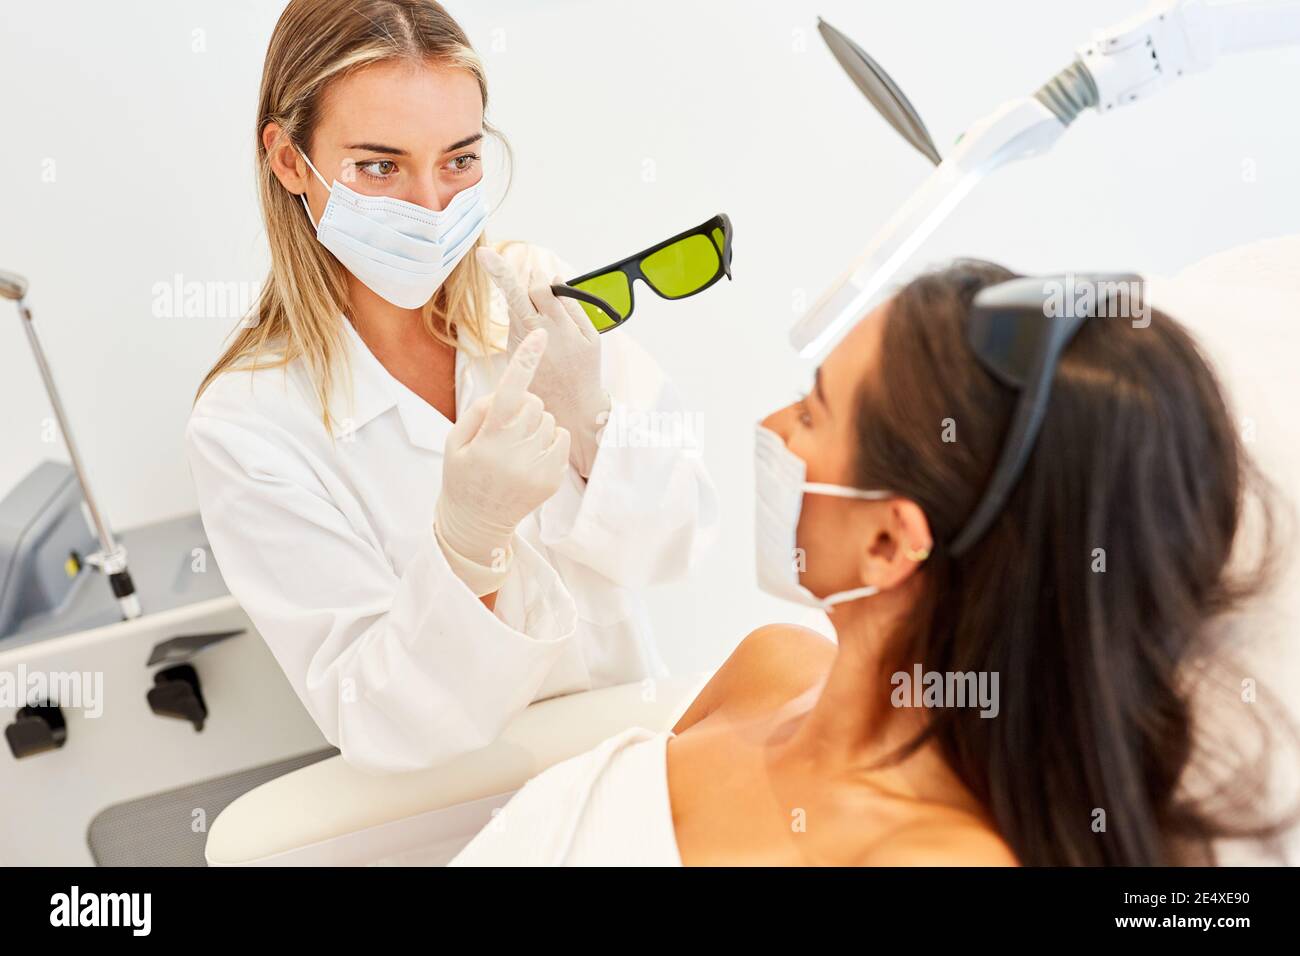 Medico o estetista con maschera mostra gli occhiali protettivi del paziente per terapia laser Foto Stock